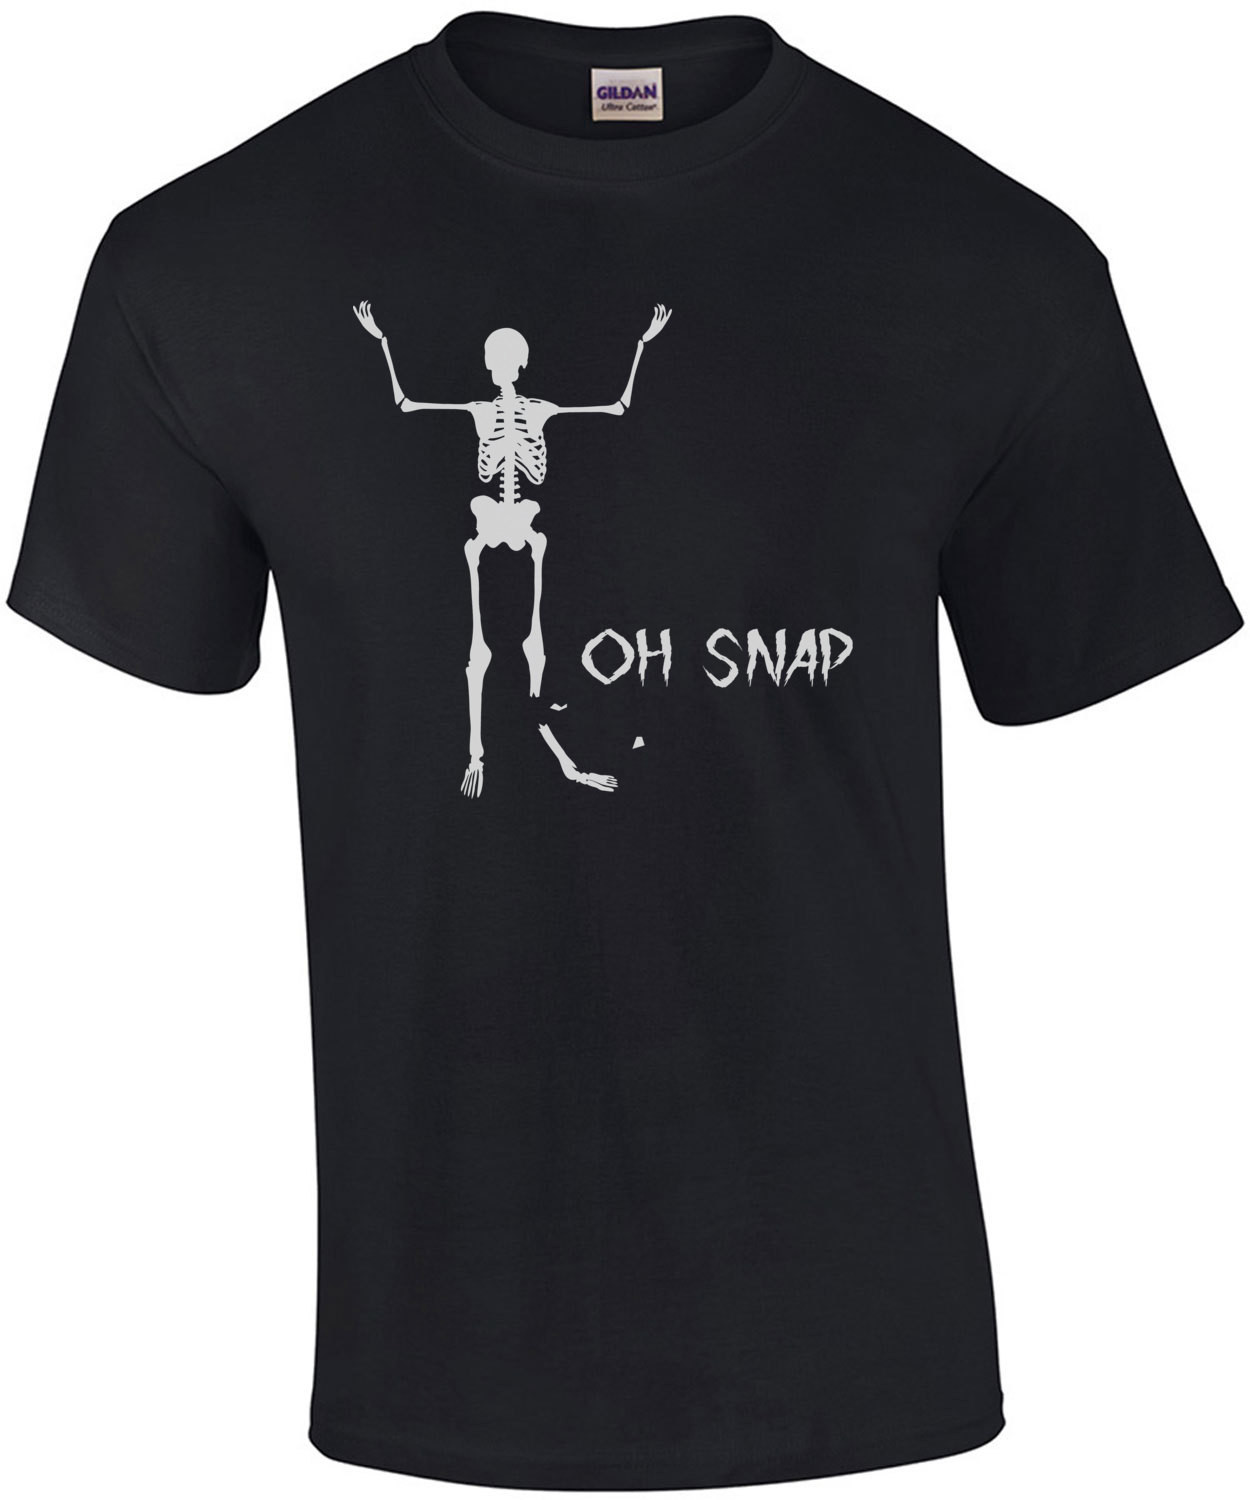 Oh Snap! T-Shirt